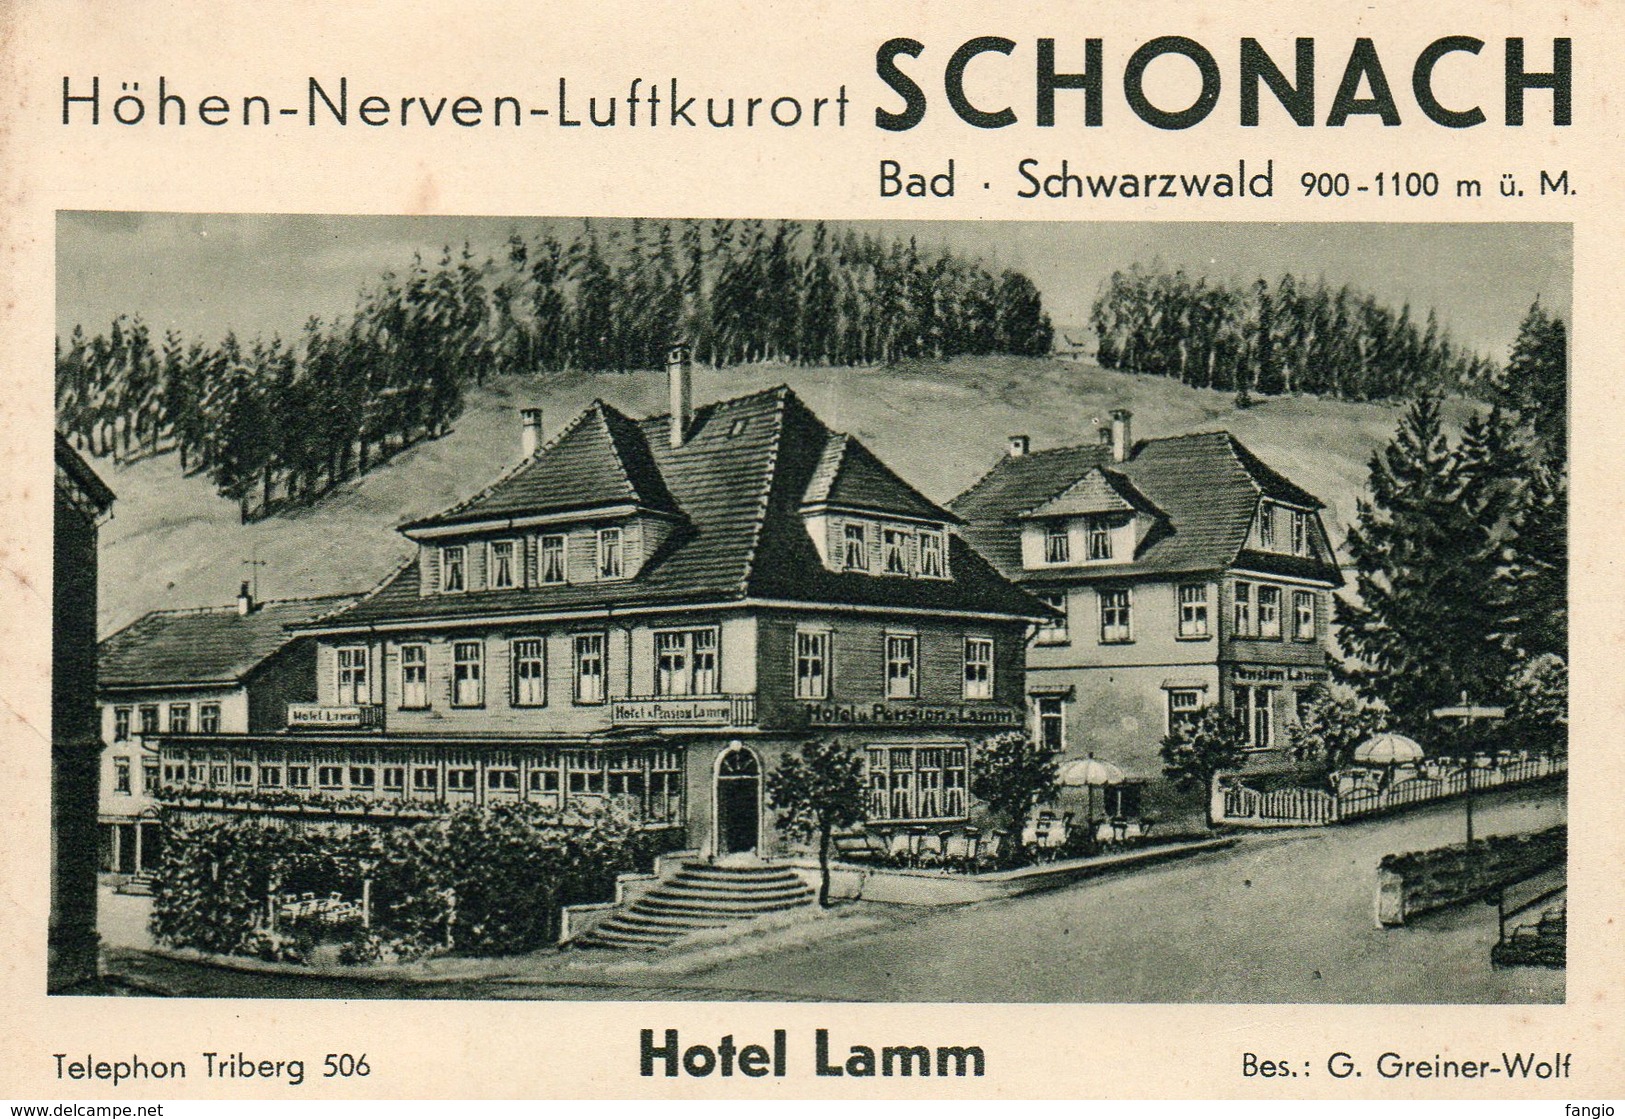 SCHONACH -- "Bad . Shwarzwald" - édit: G. Greiner-Wolf. - Tourism Brochures